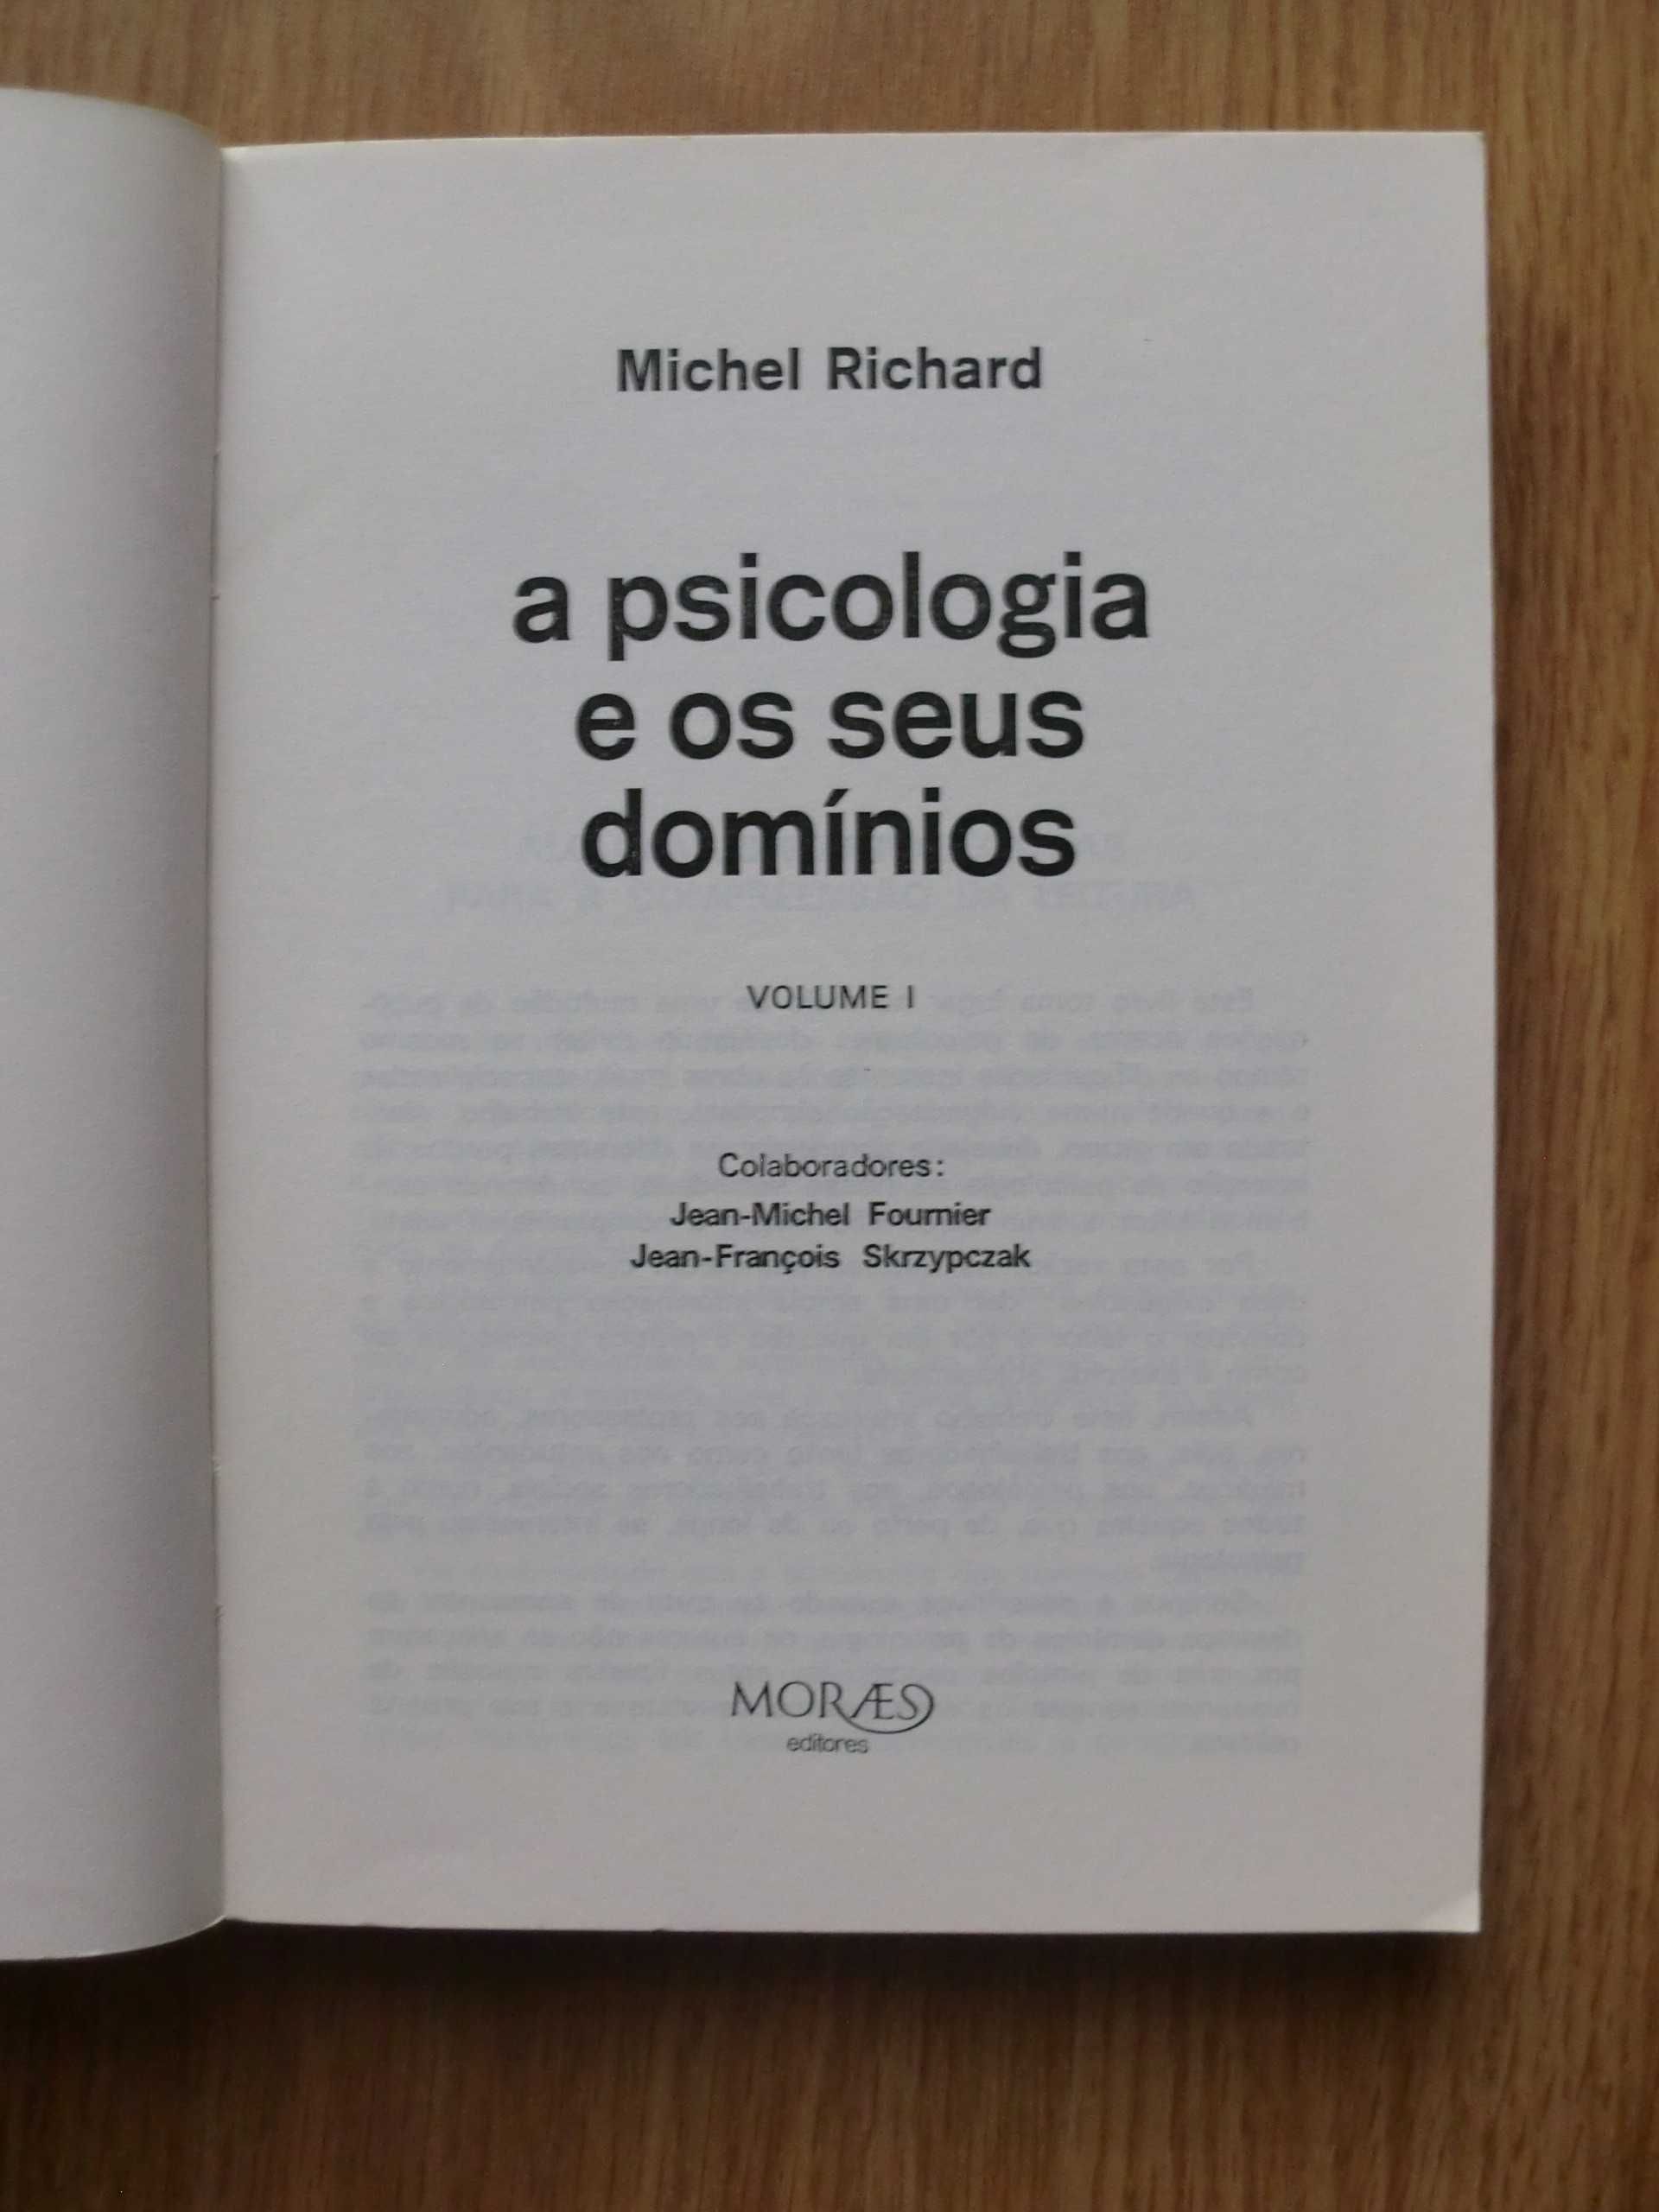 A Psicologia e os seus domínios
( de Freud a Lacan)
de Michel Richard